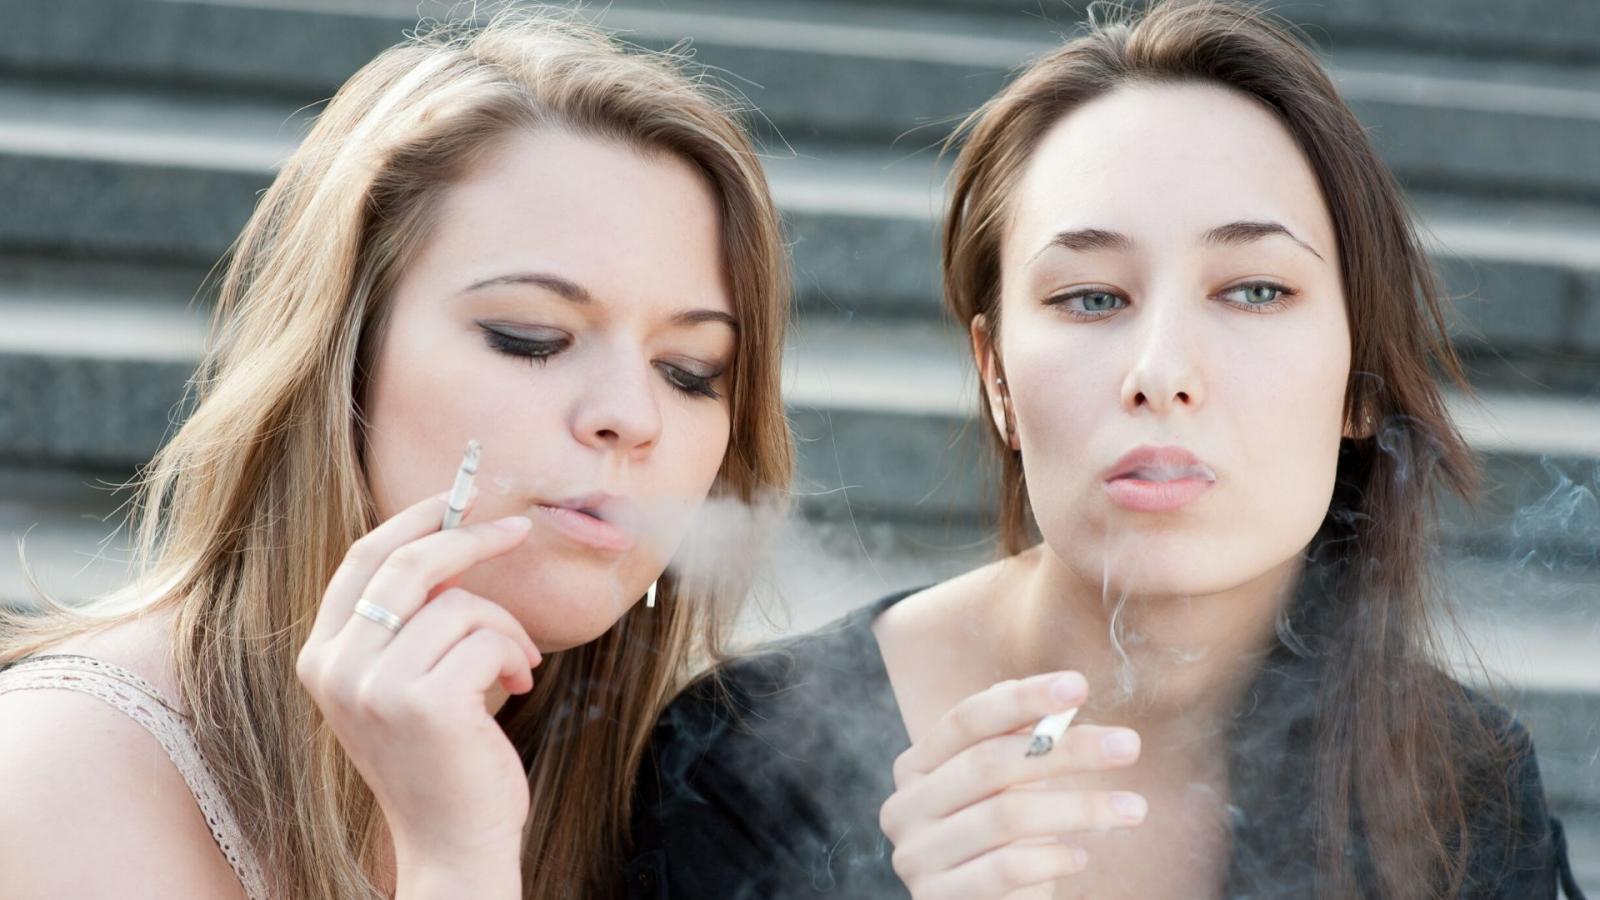 /young women smoking